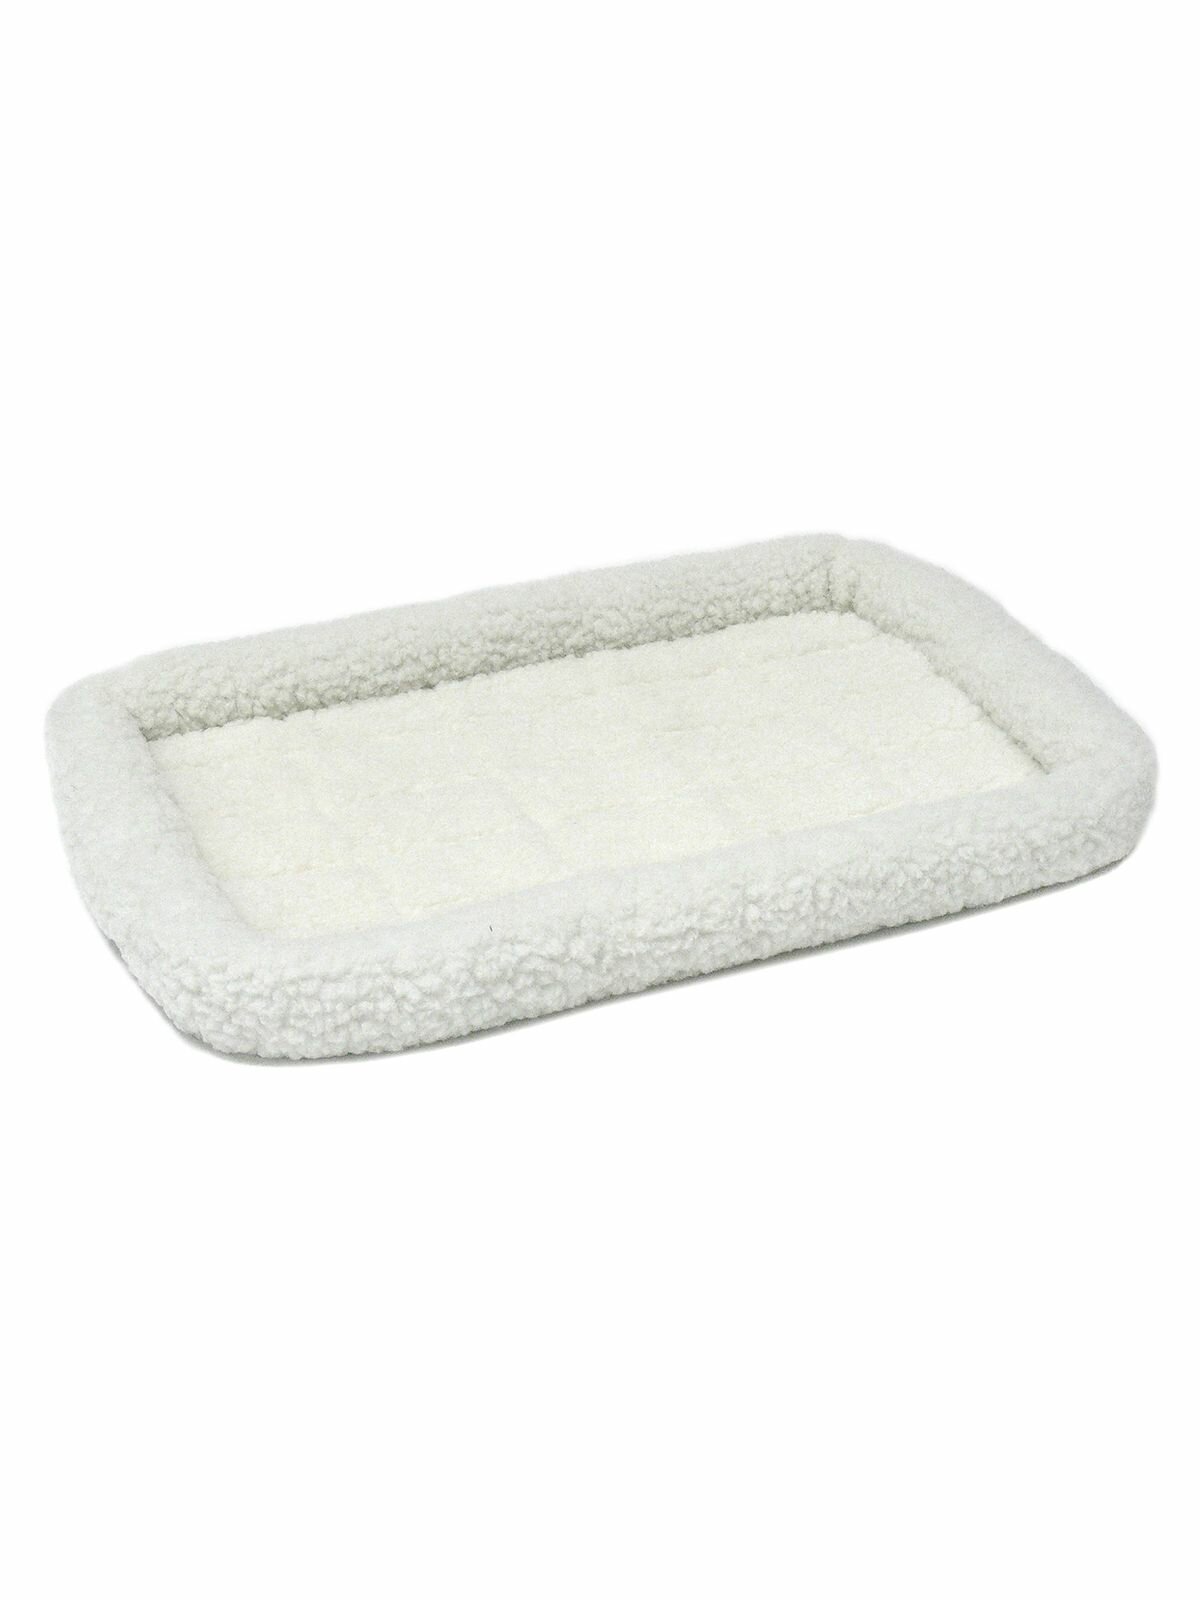 Лежанка MidWest Pet Bed для собак и кошек флисовая 77х52 см, белая VLT-40230